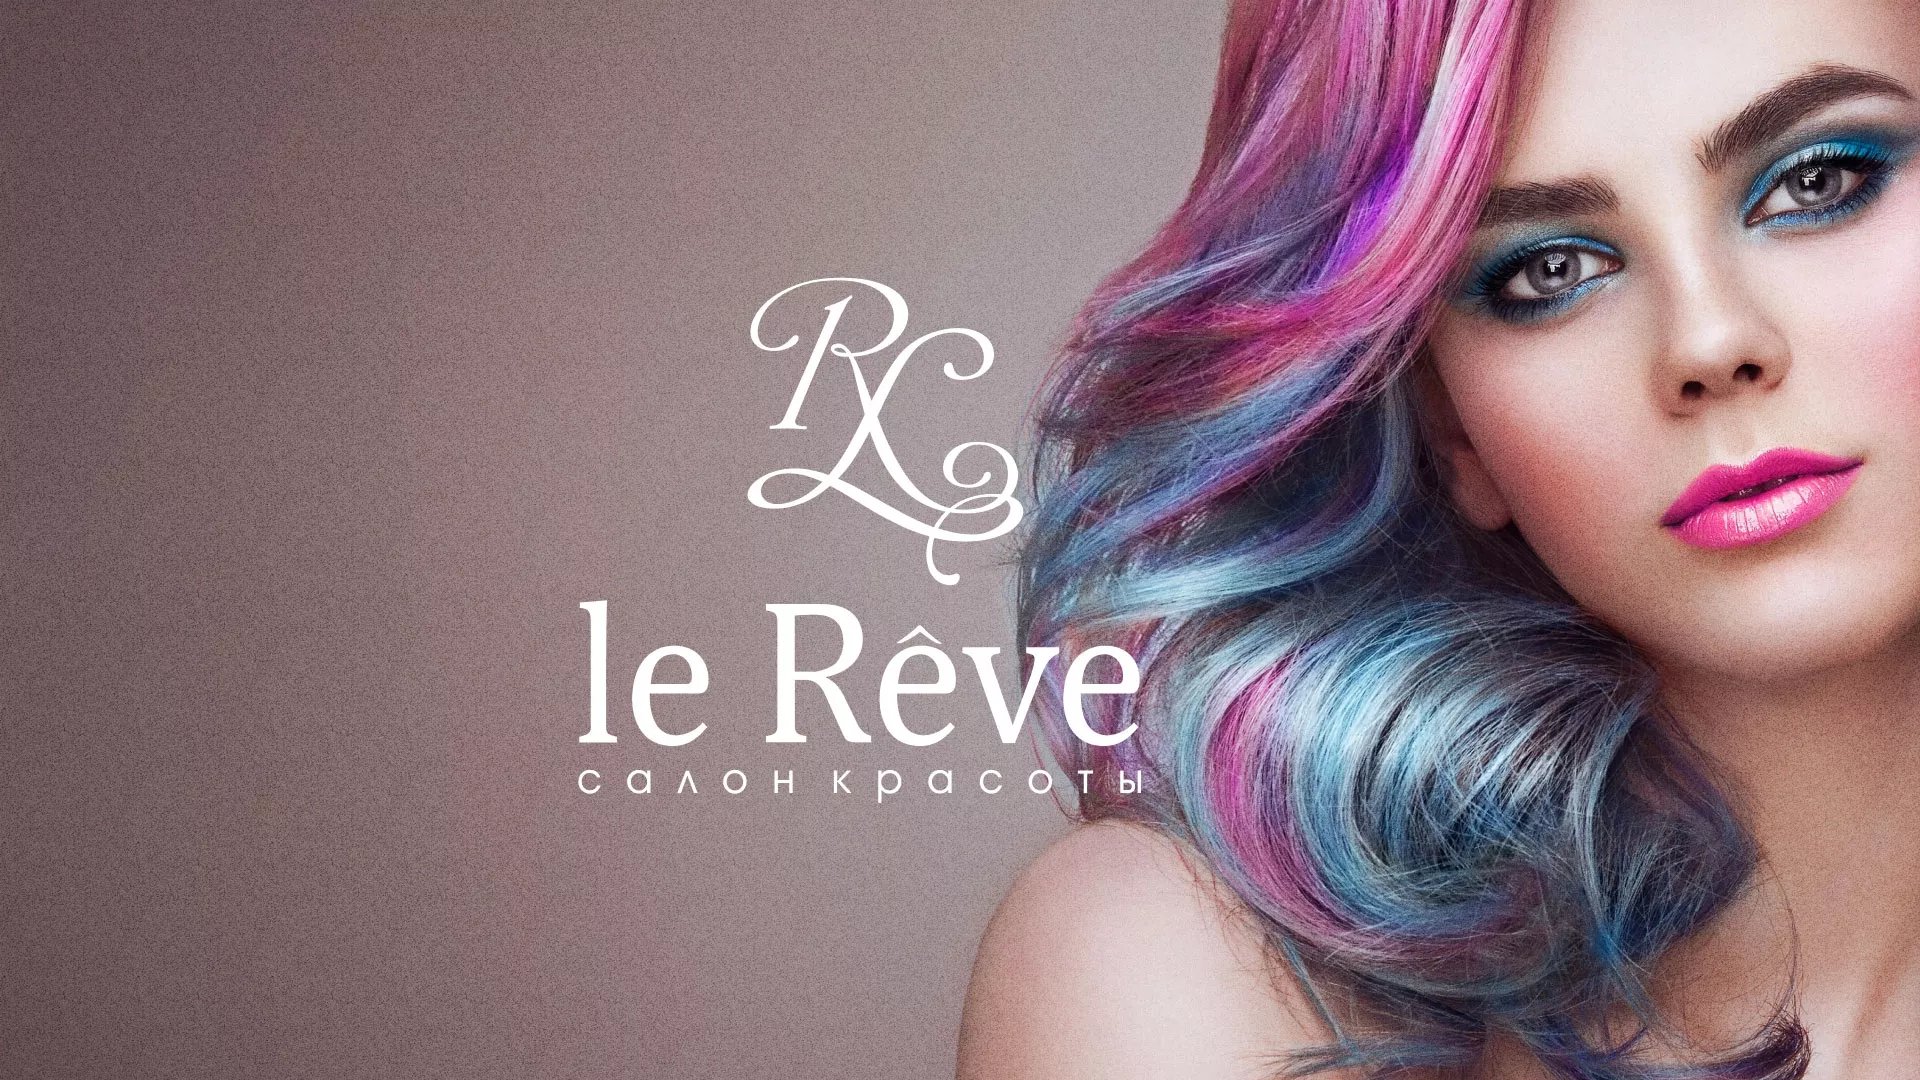 Создание сайта для салона красоты «Le Reve» в Осинниках